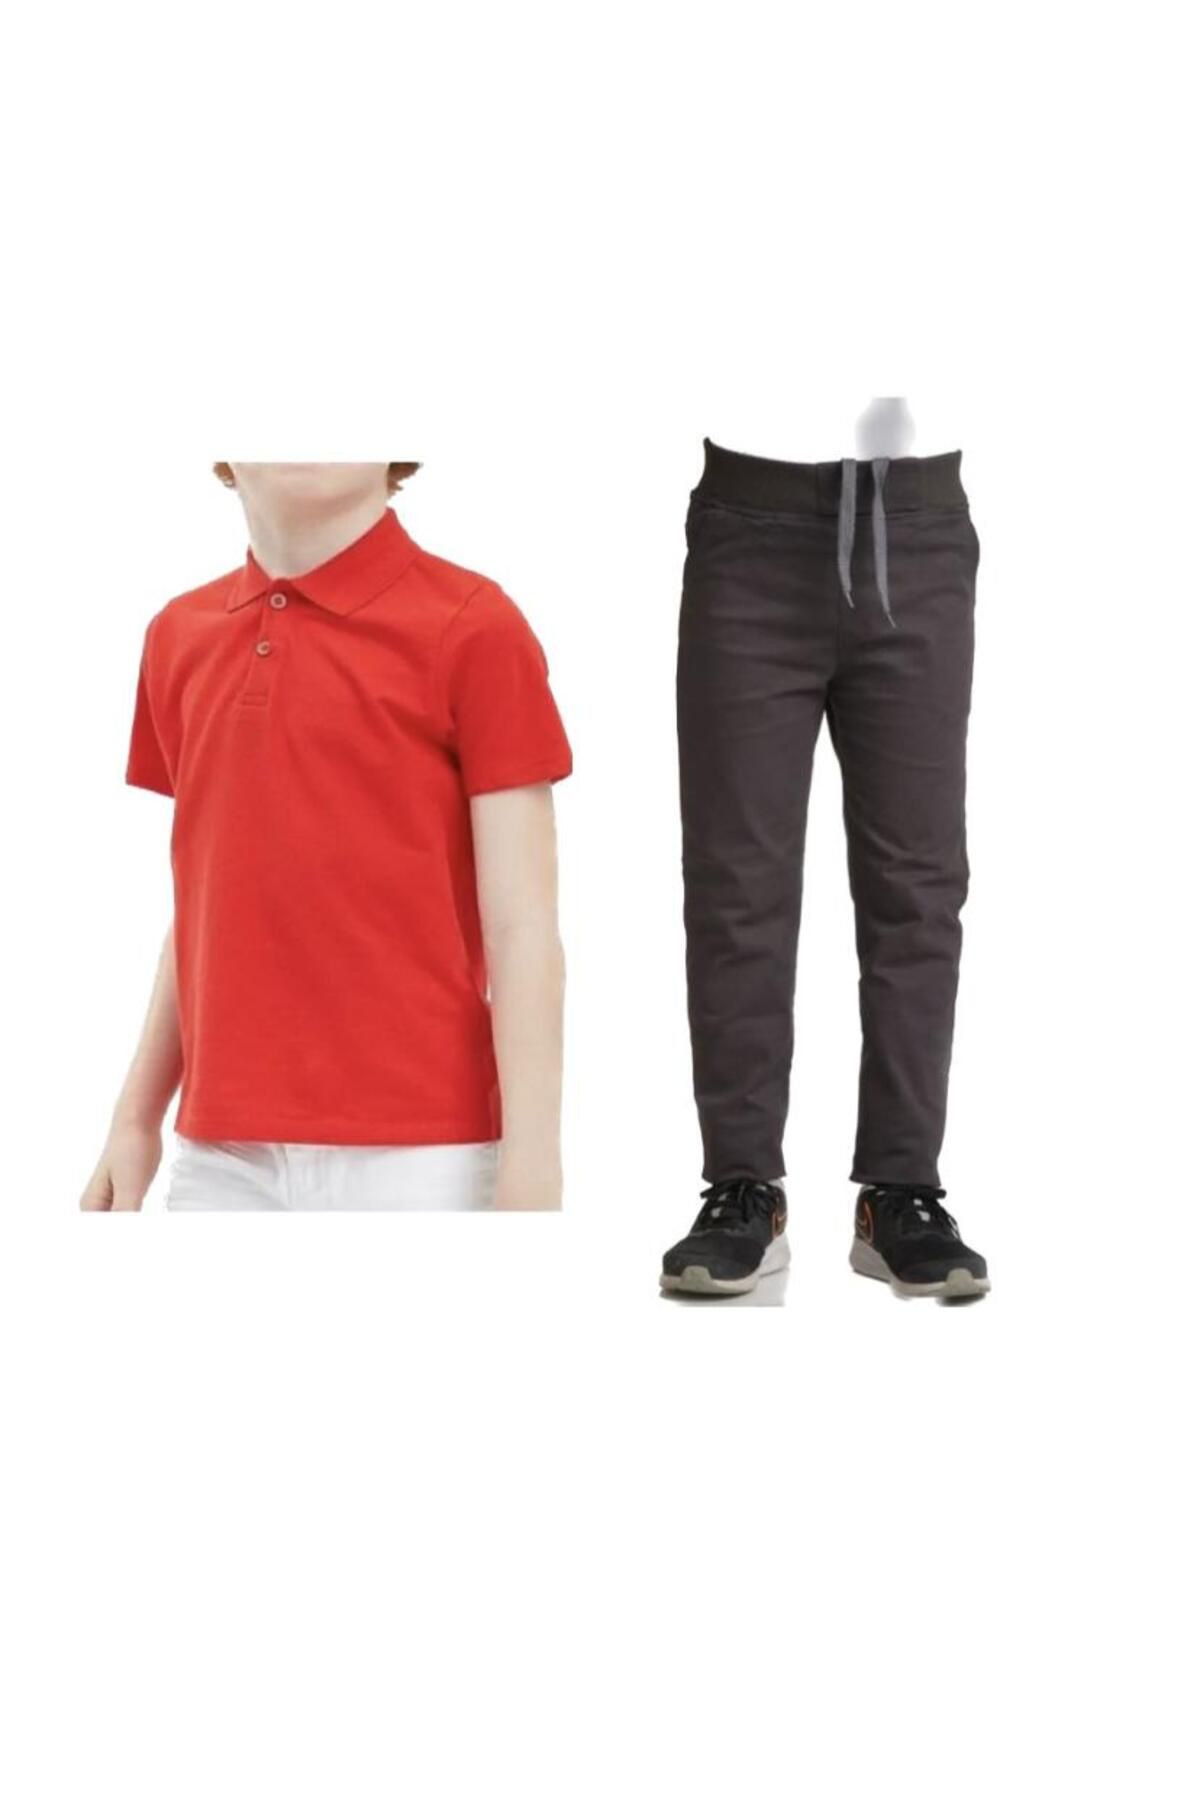 FATELLA Unisex çocuk okul ribana bel pantolon - kırmızı kısa kol Polo yaka Tişört 2li takım